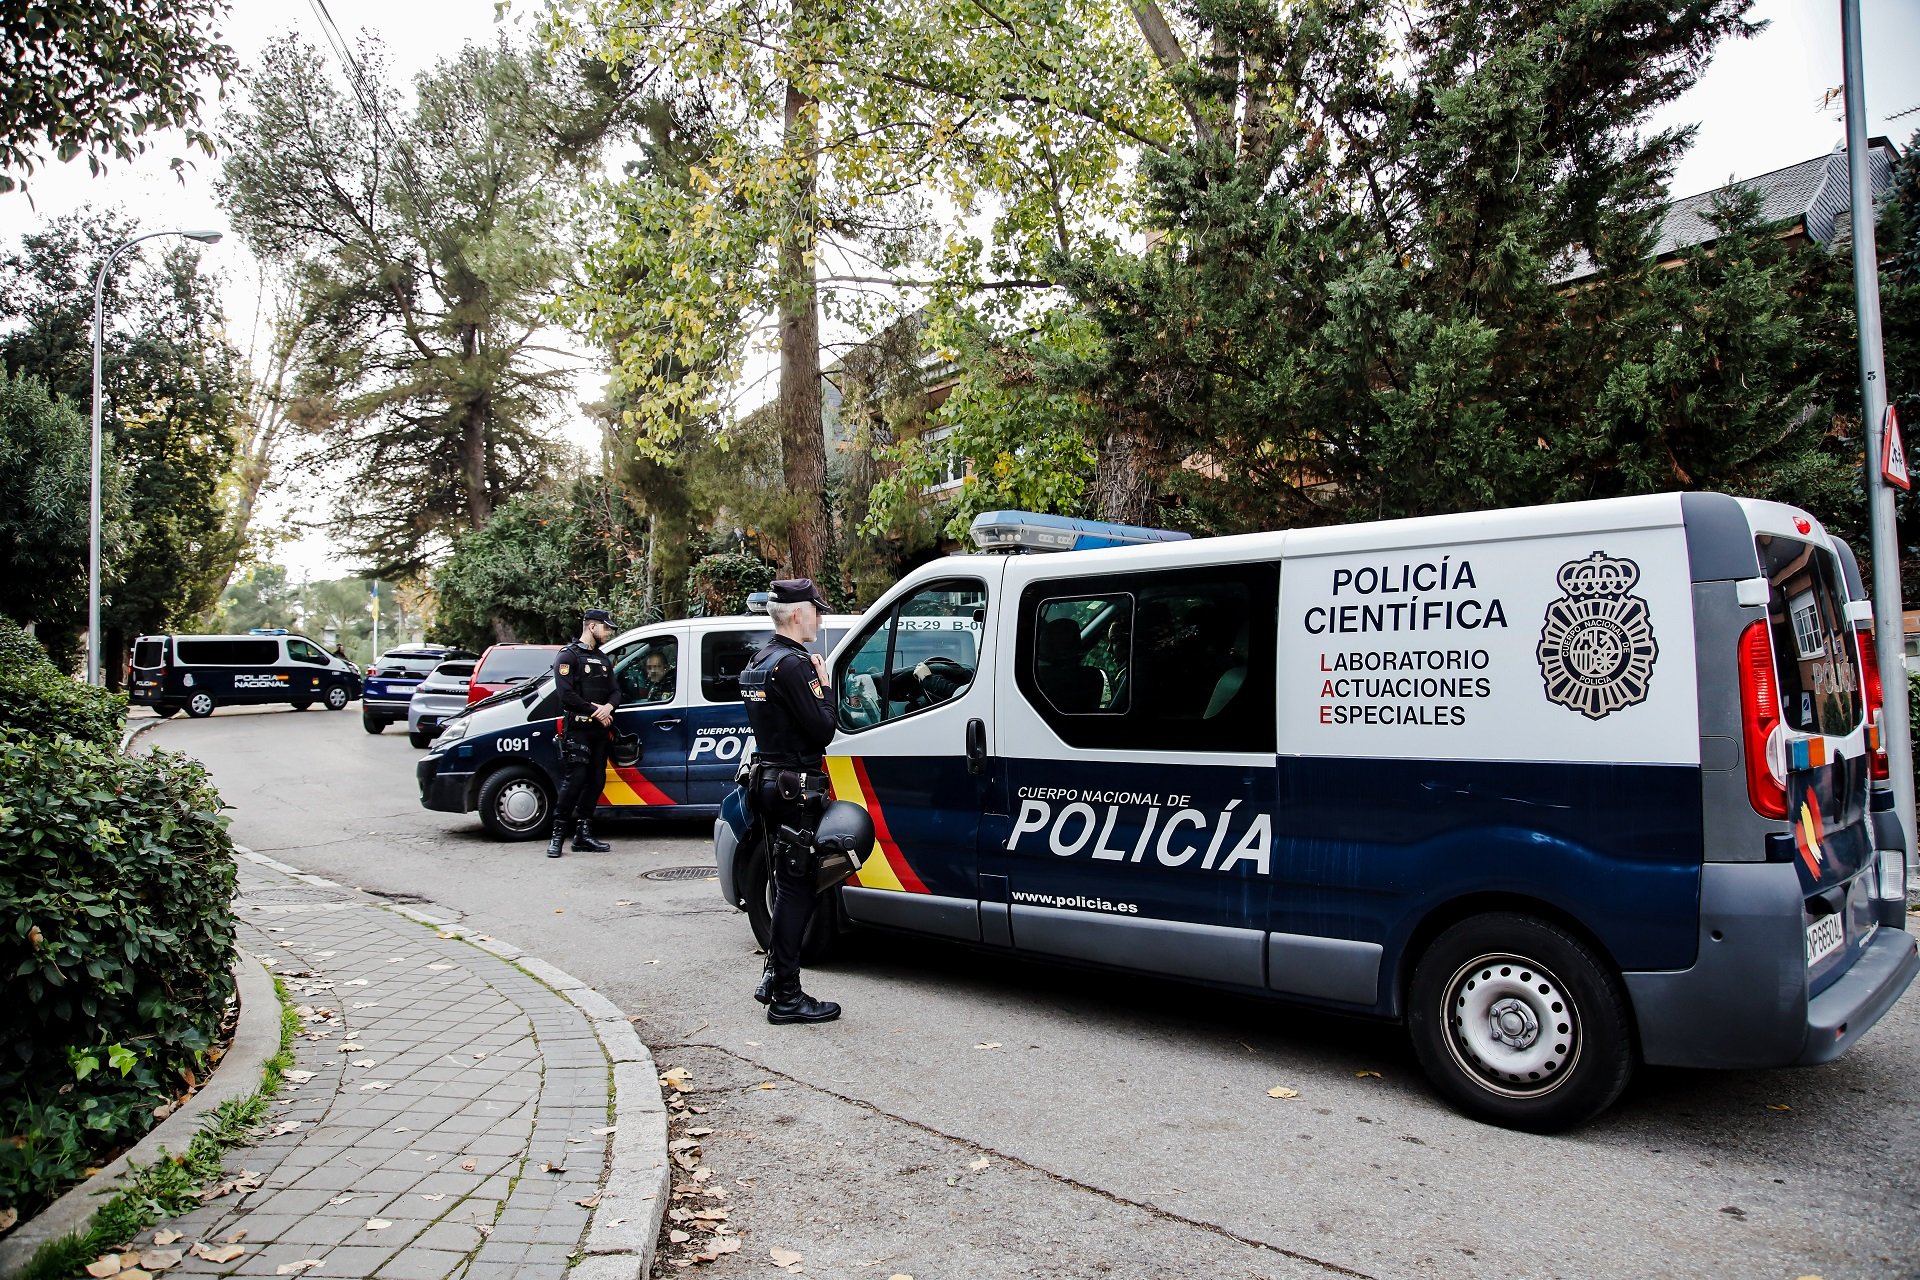 Agentes rusos enviaron las cartas bomba a España, según 'The New York Times'